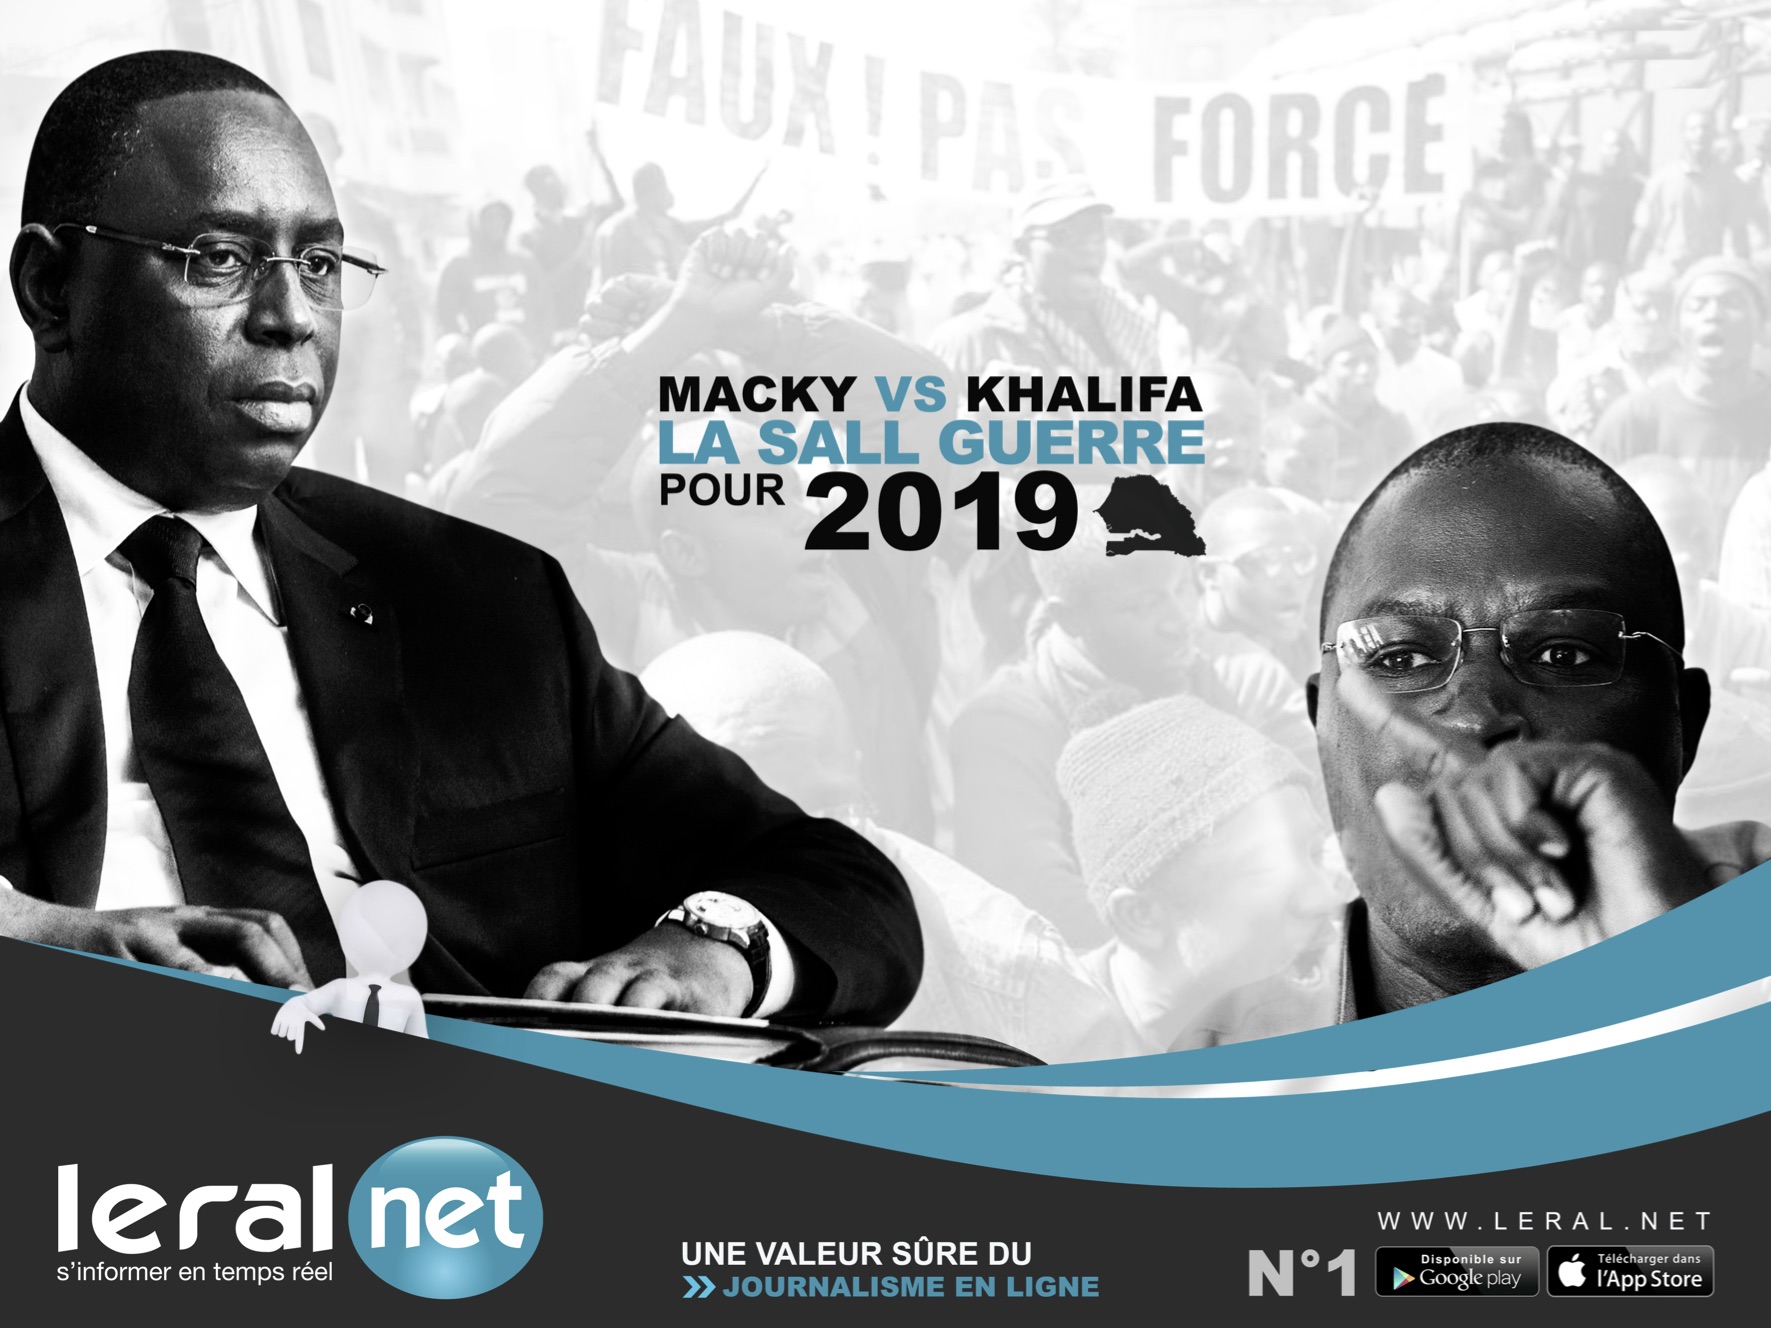 Macky Sall vs Khalifa Sall, la SALL guerre pour 2019 aura-t-elle lieu?